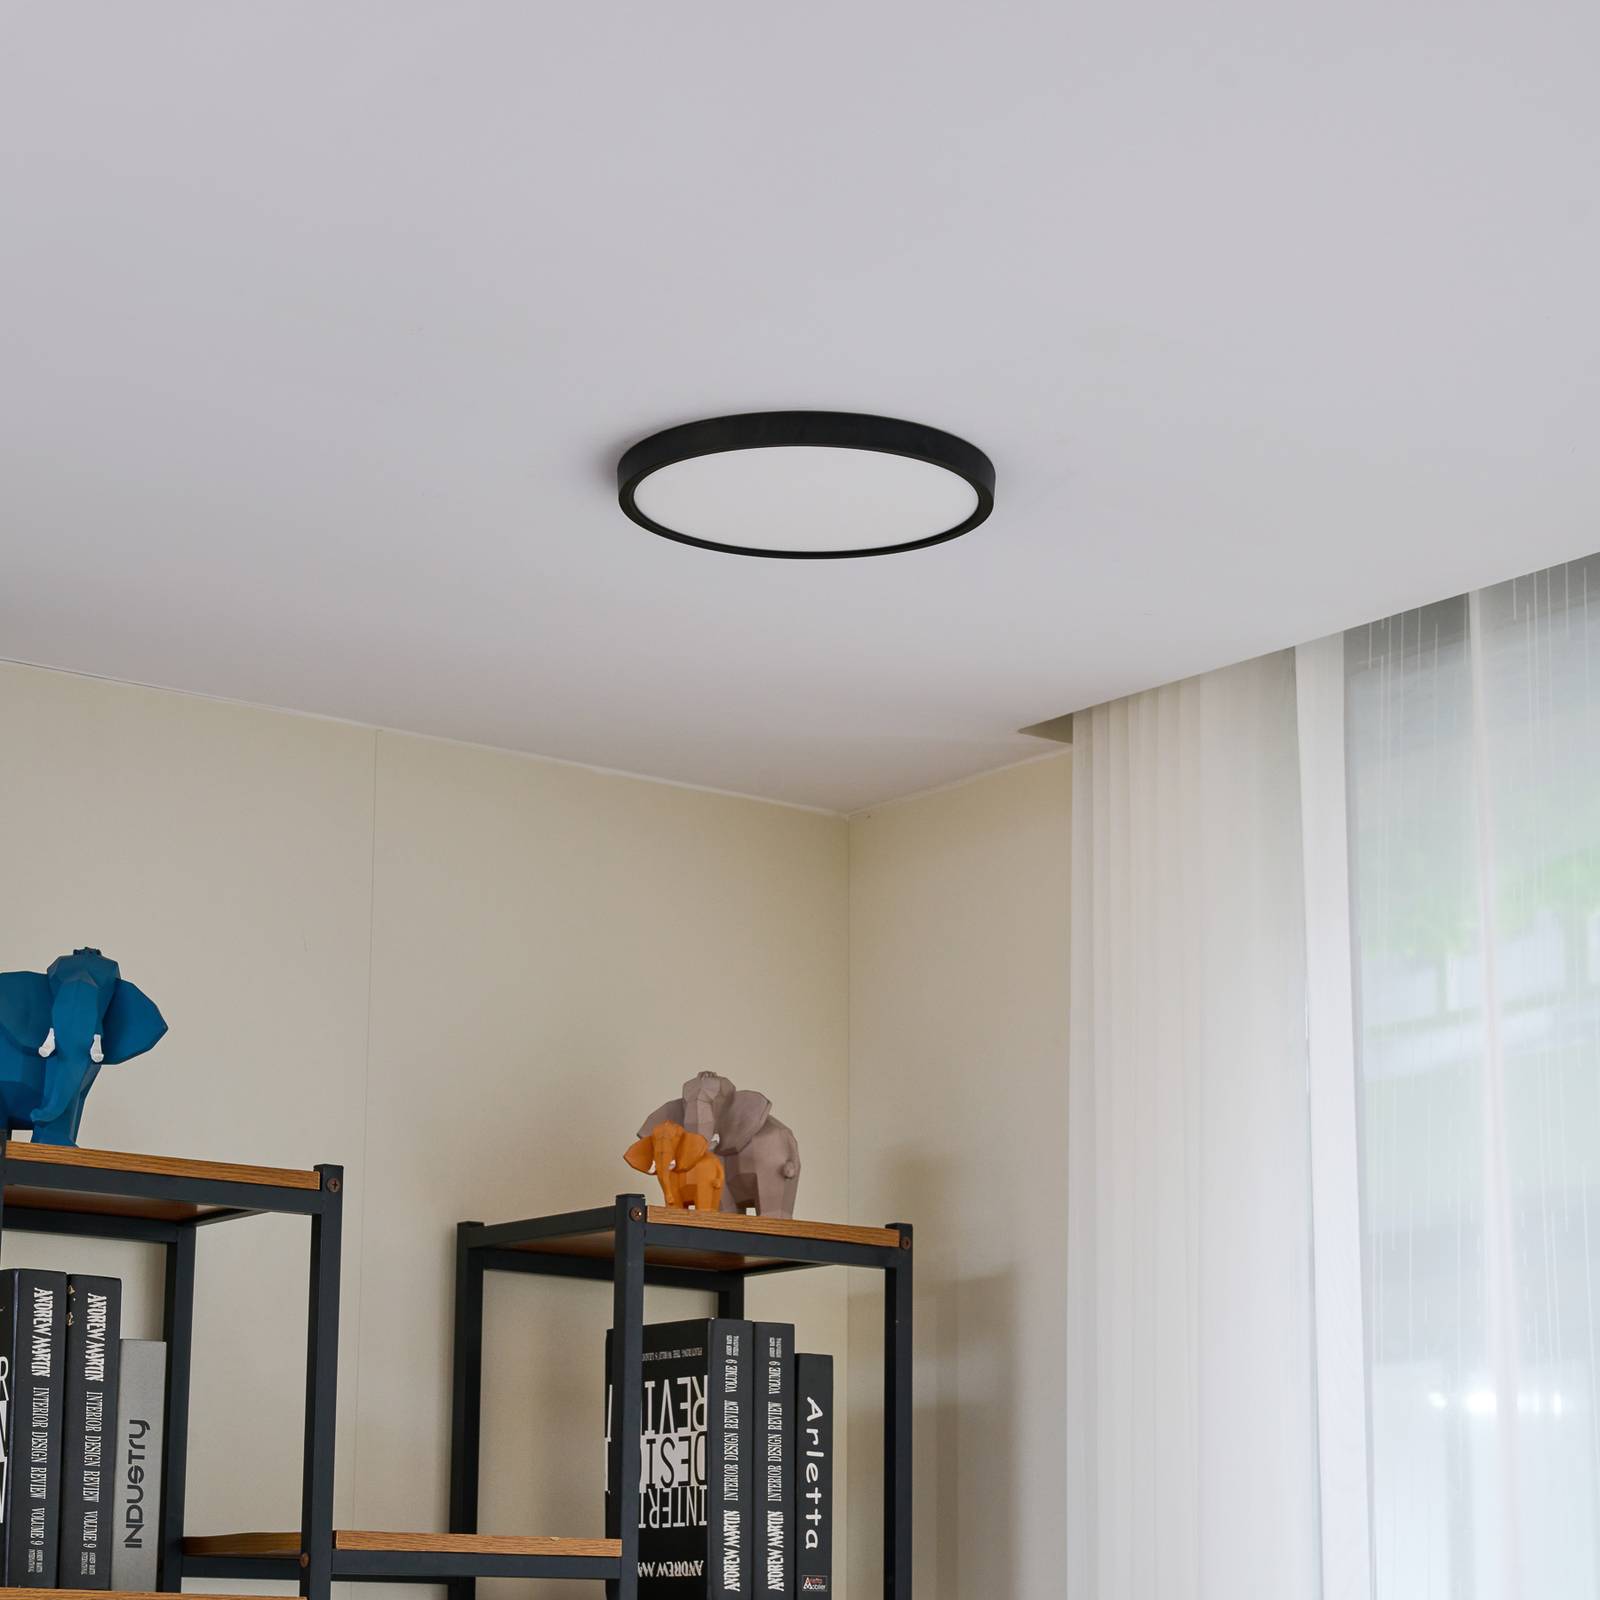 Lindby LED stropné svietidlo Pravin, Ø 30 cm, 3 000 K, čierne